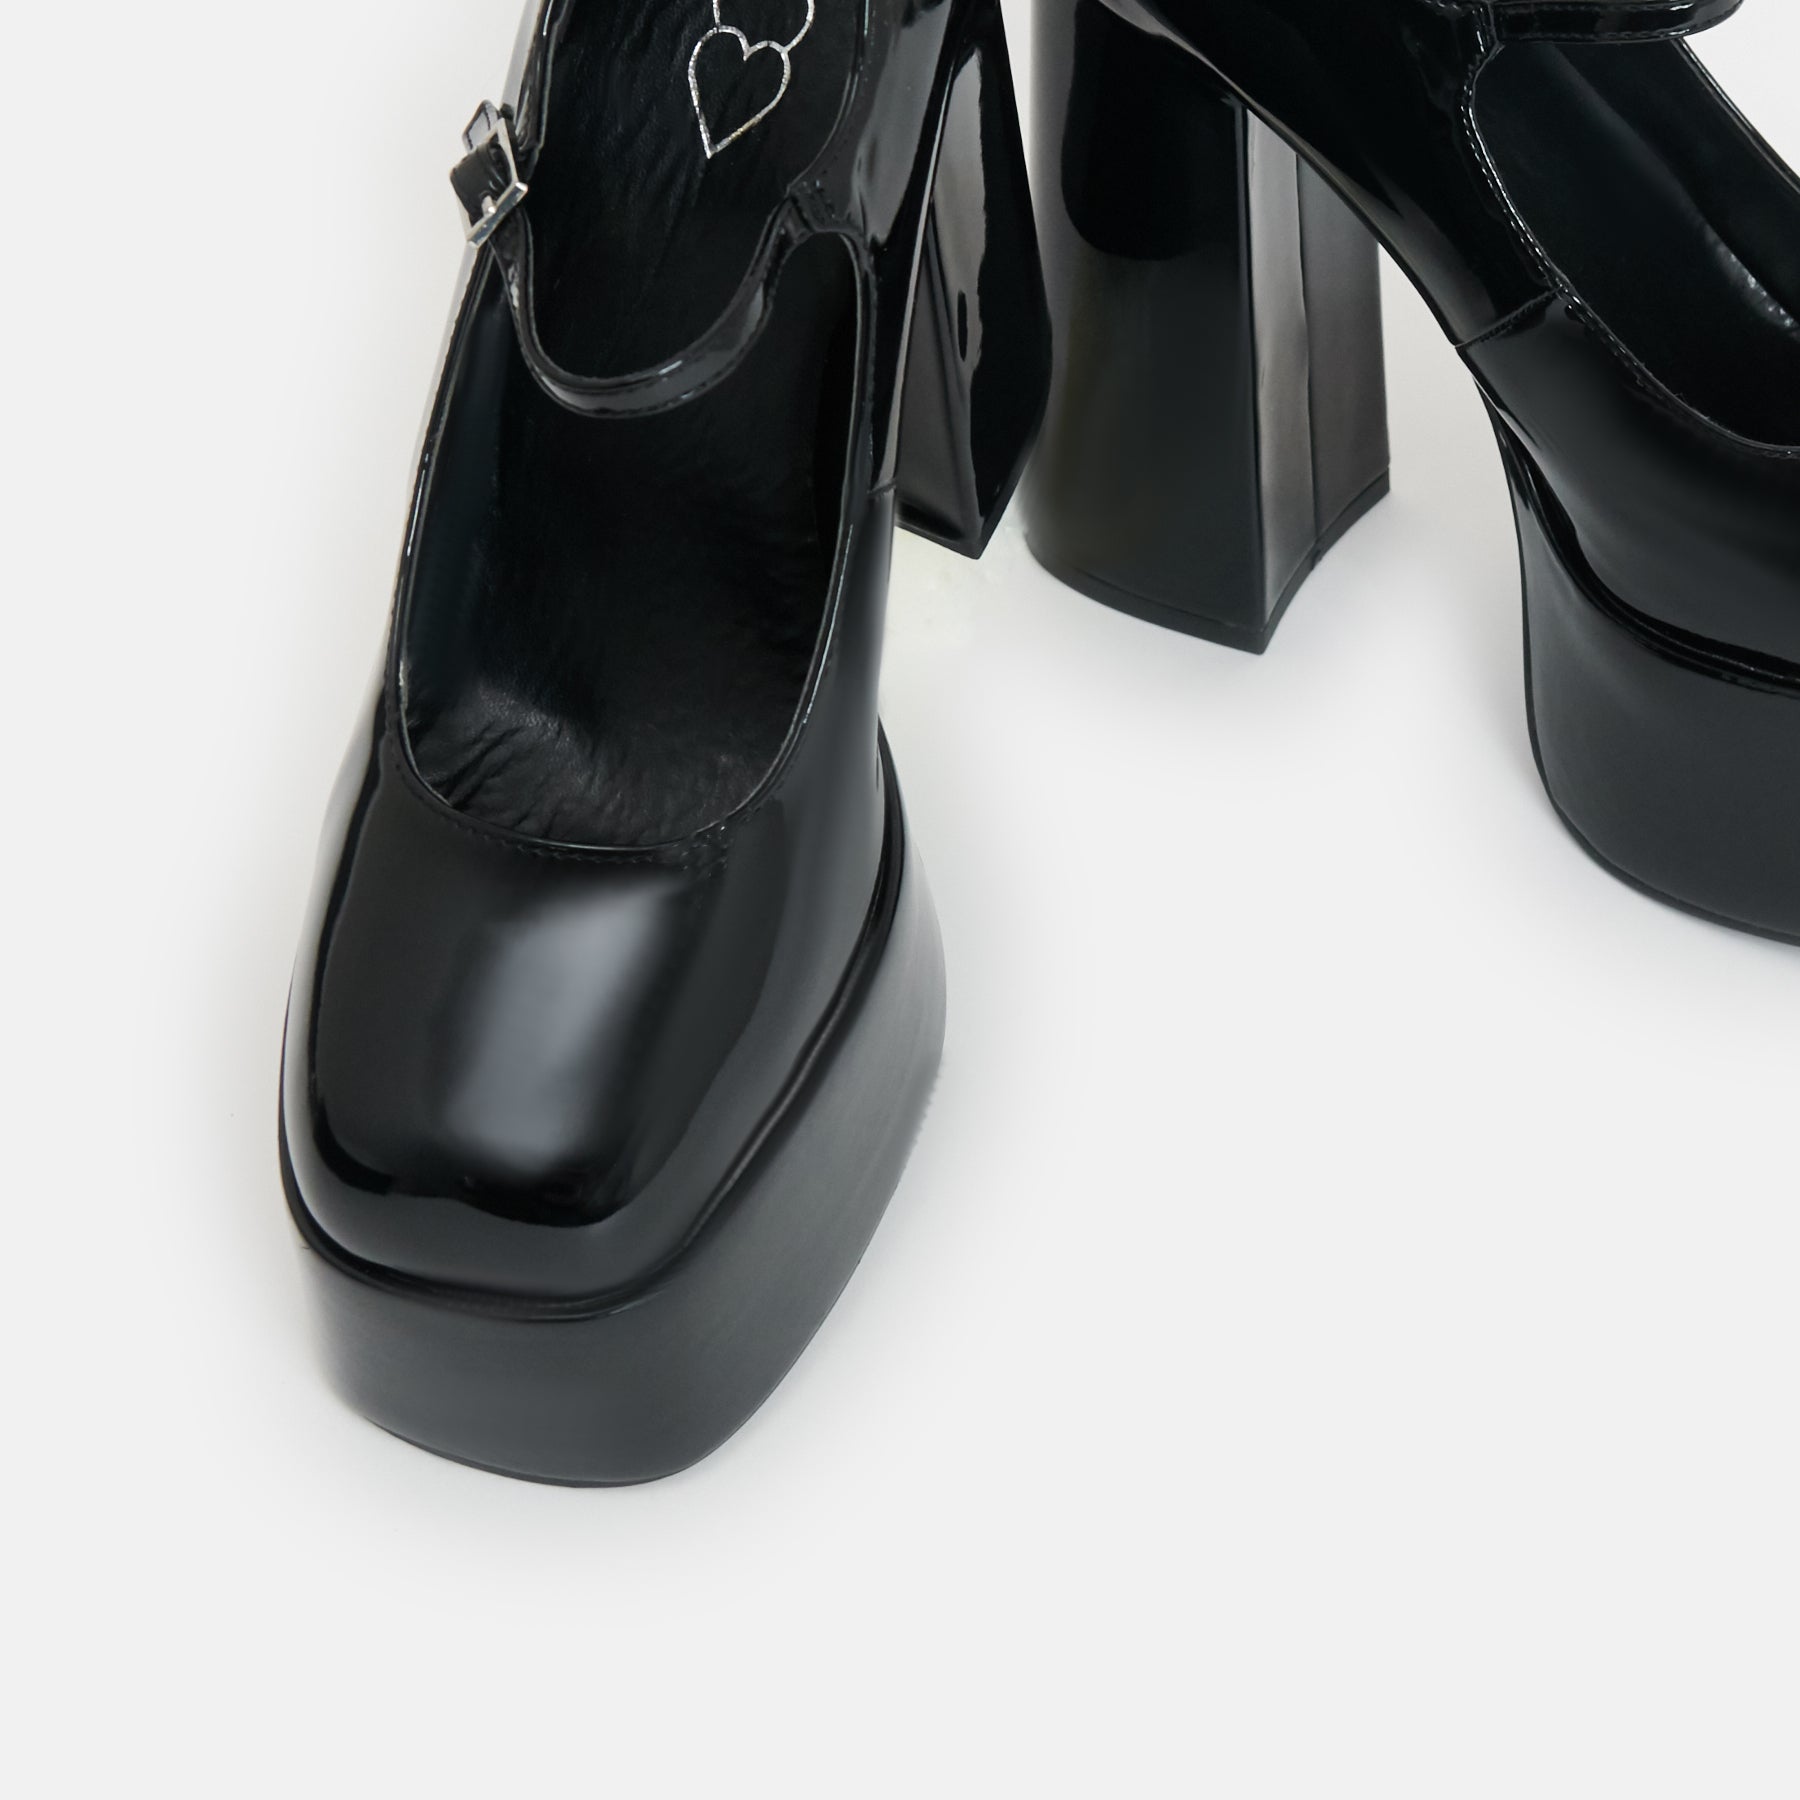 Darkbloom Black Patent Platform Heels - Shoes - KOI Footwear - Black - Top View